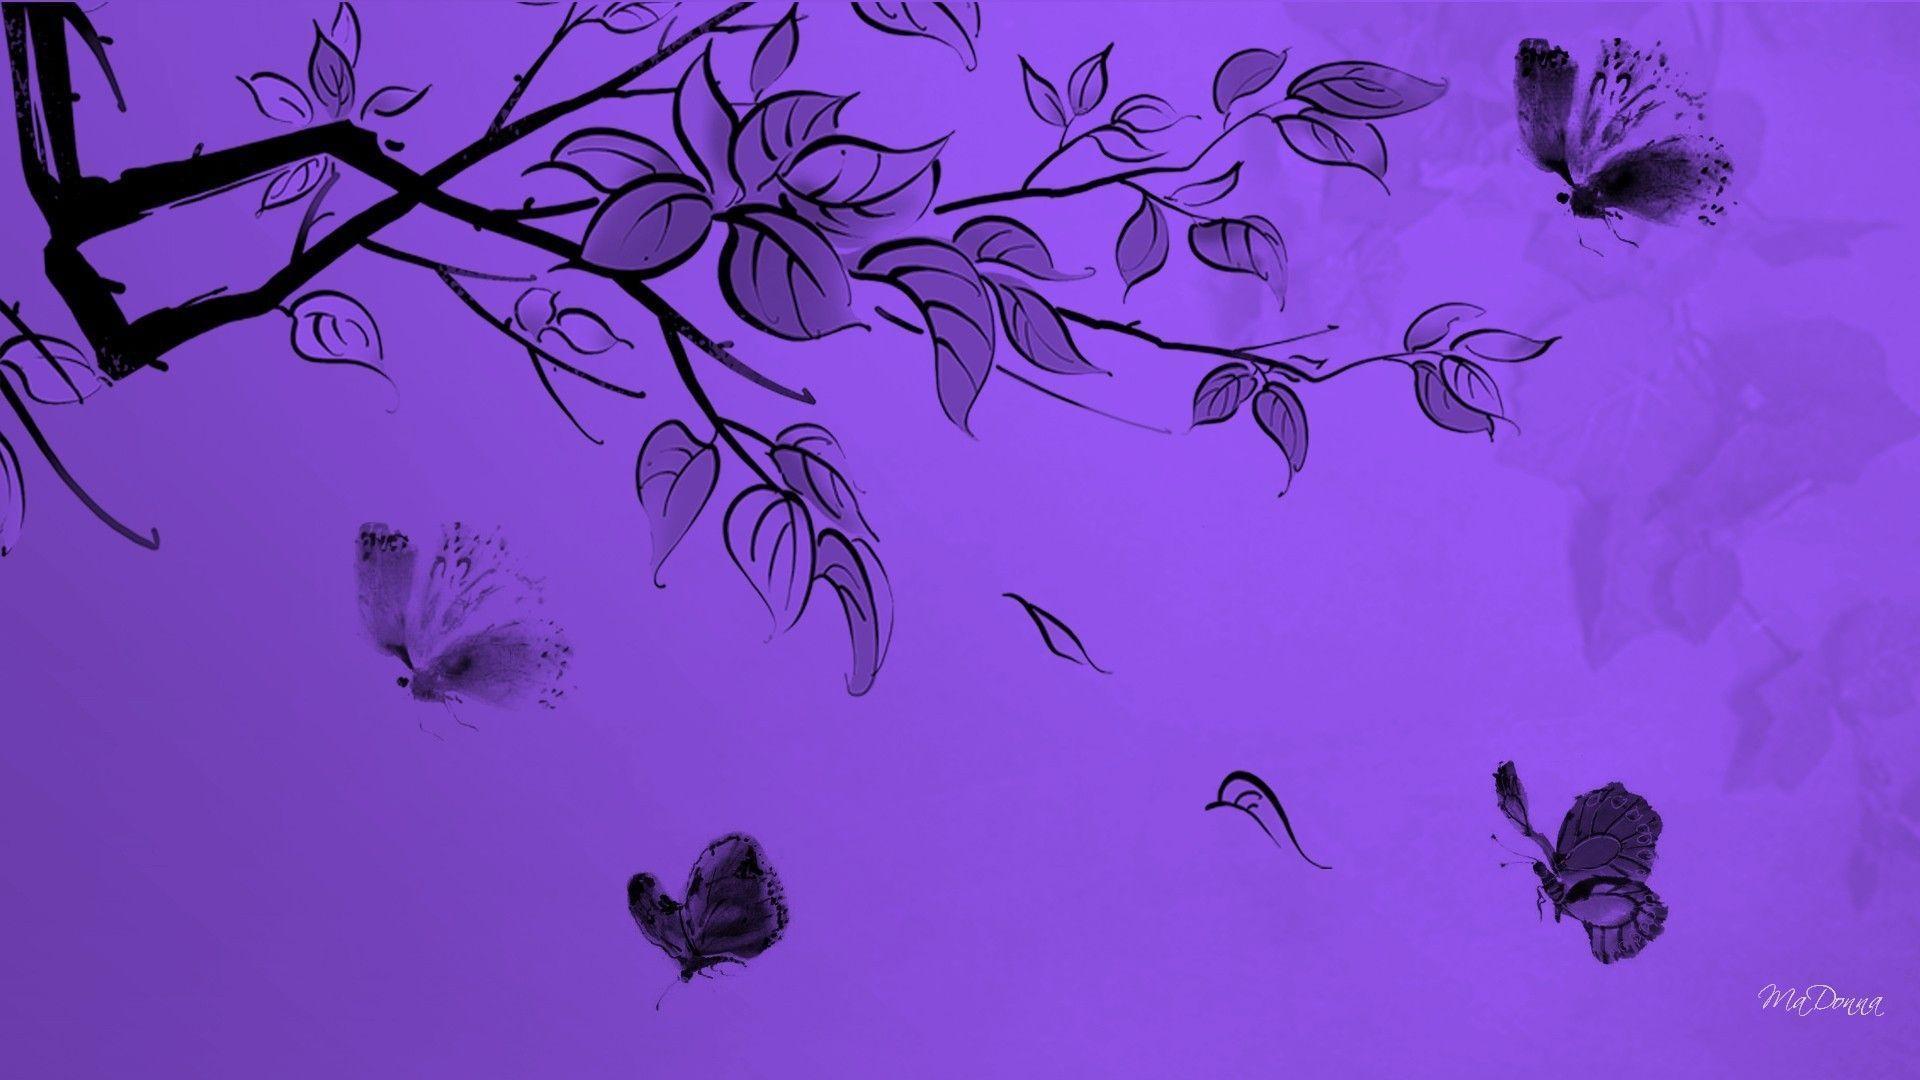 Wallpaper For > Dark Purple Butterfly Wallpaper